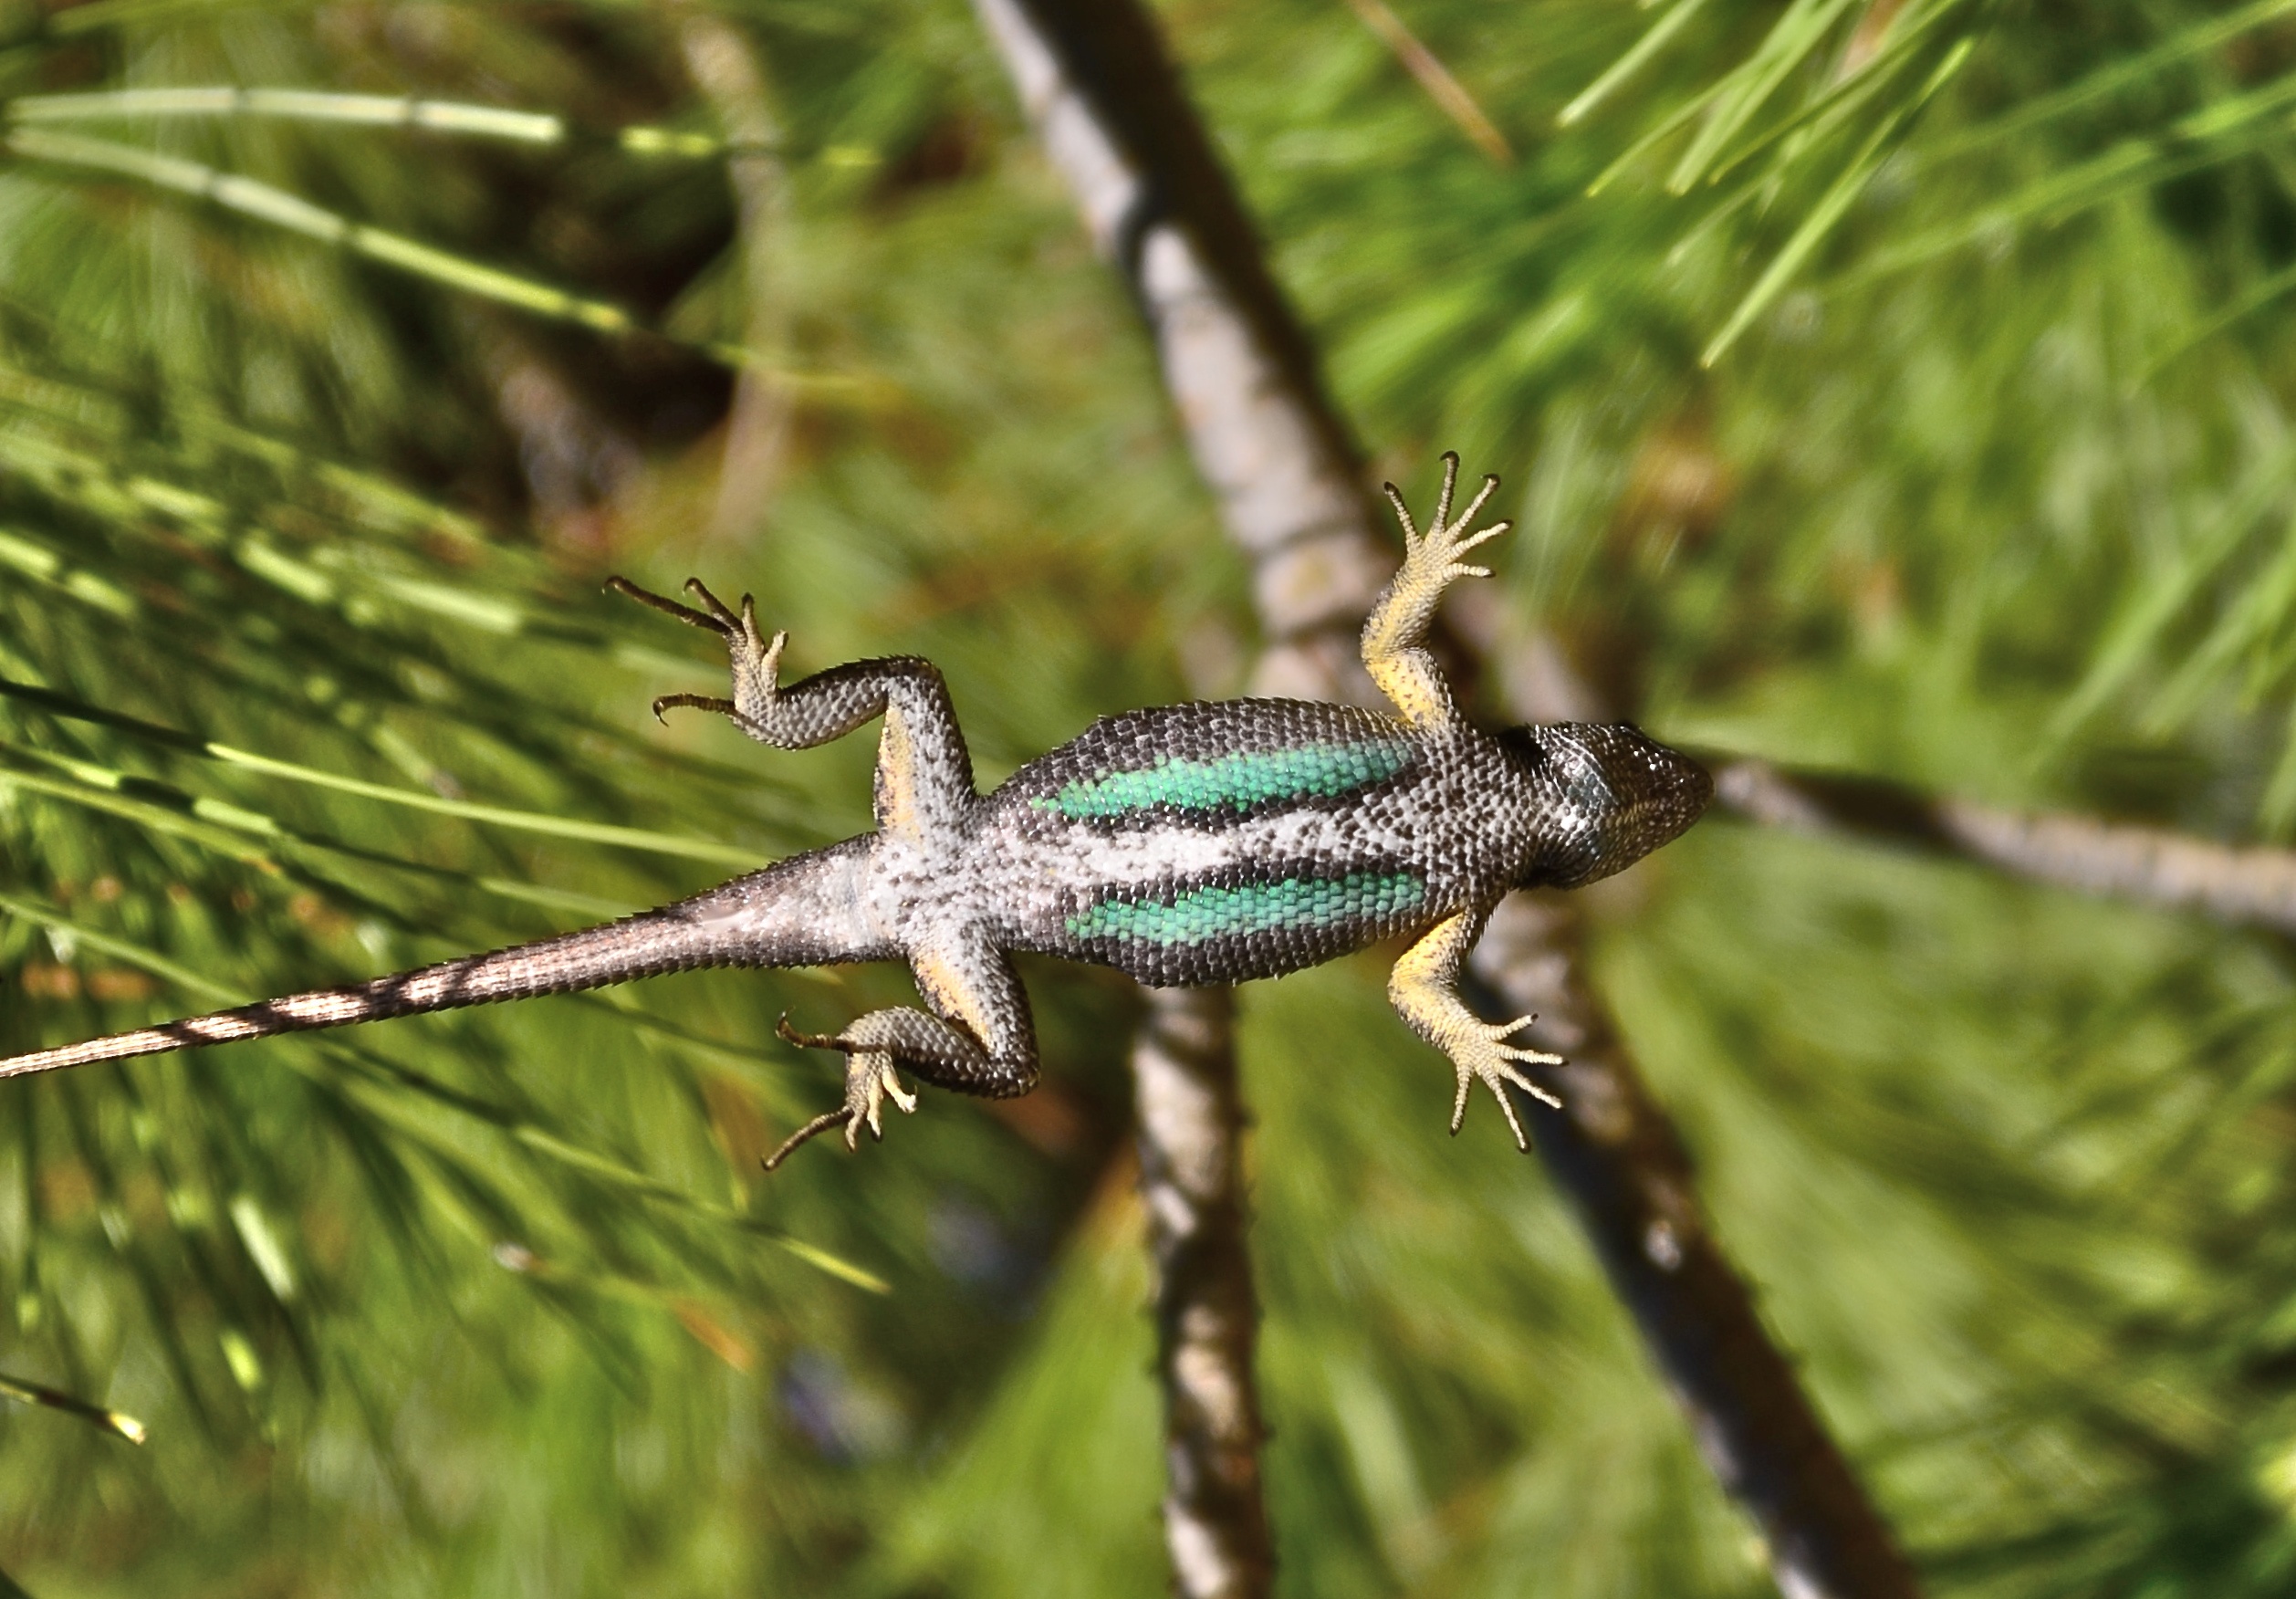 File:Western fence lizard - underside.jpg - Wikimedia Commons